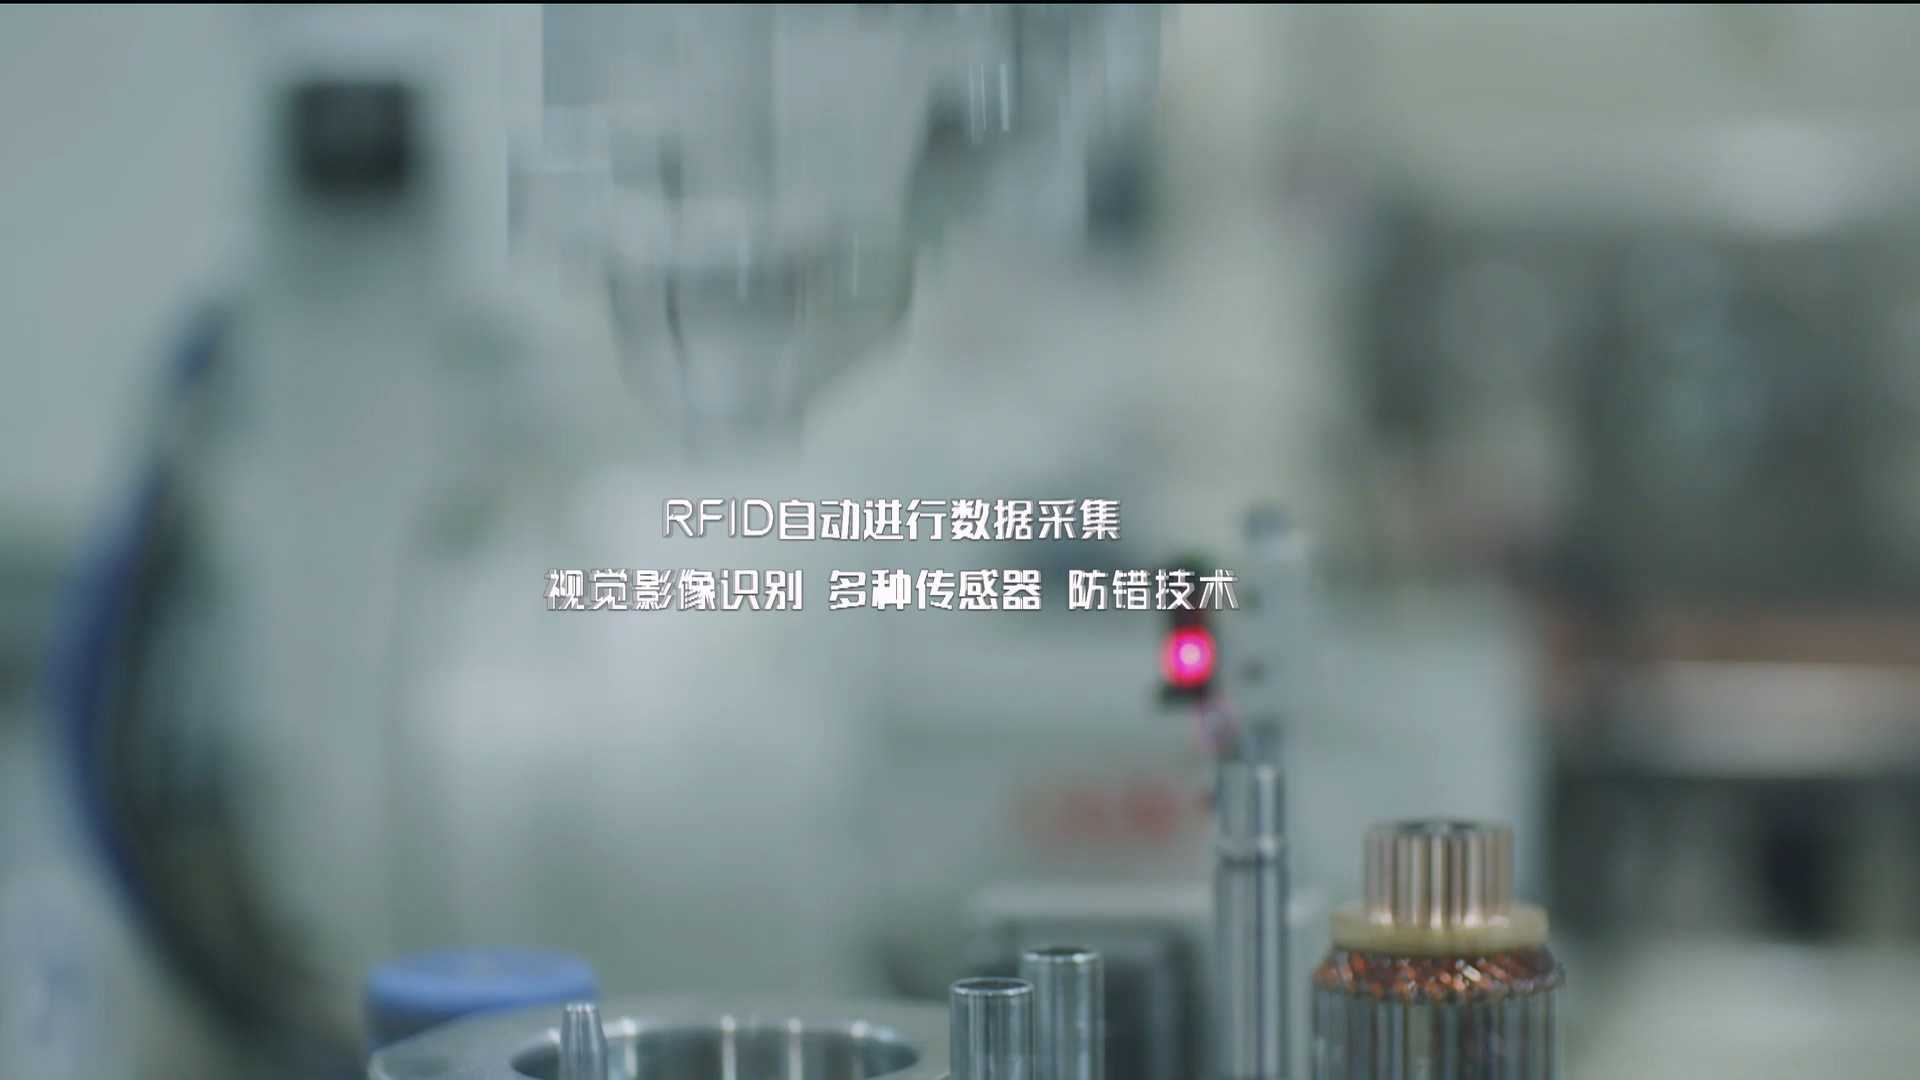 汉拿电机-中文版宣传片-宣传片-企业宣传片-汽车行业